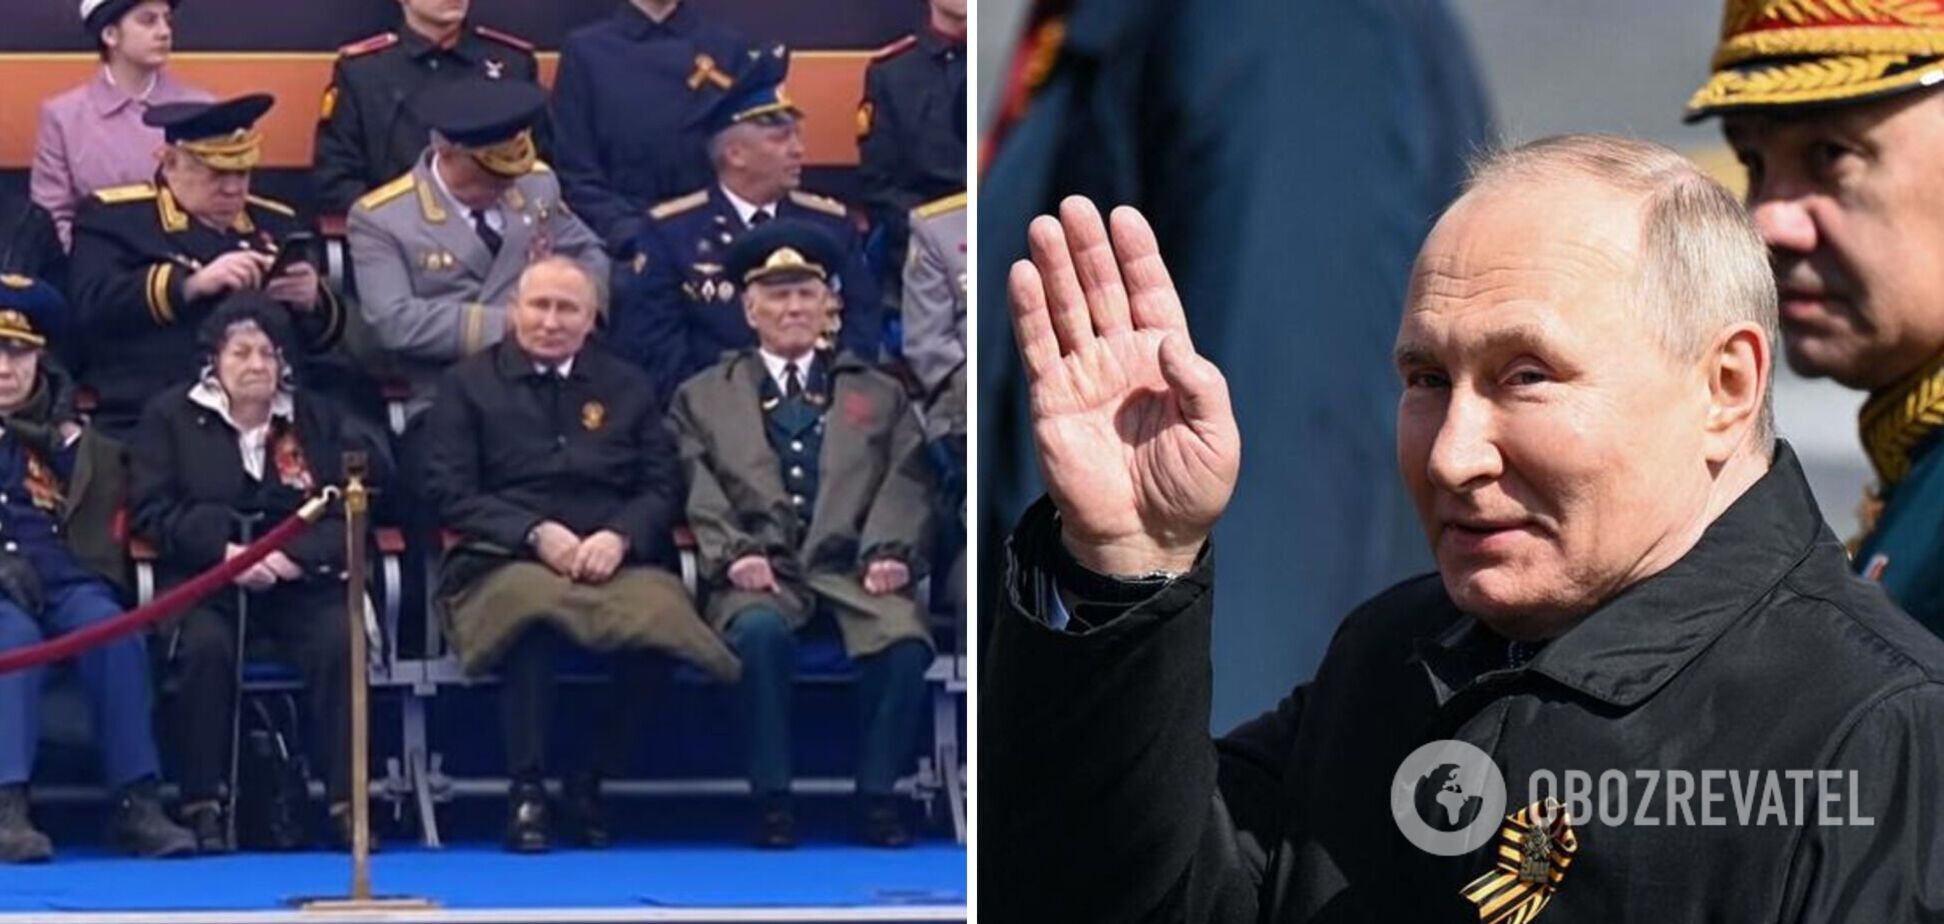 'Было много сигналов': эксперт по языку тела проанализировала поведение Путина 9 мая